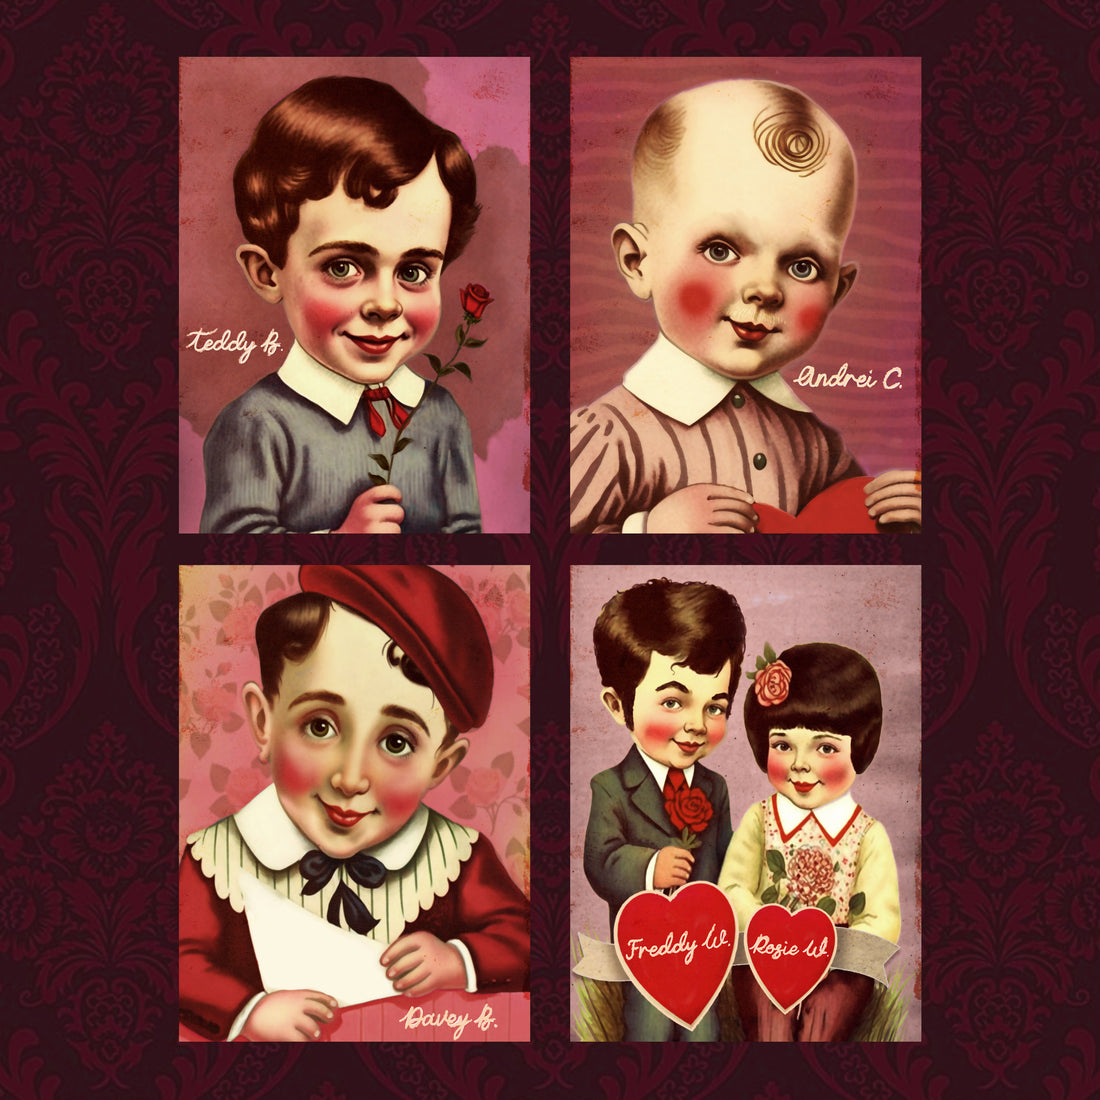 Timesuck Valentines Card Set